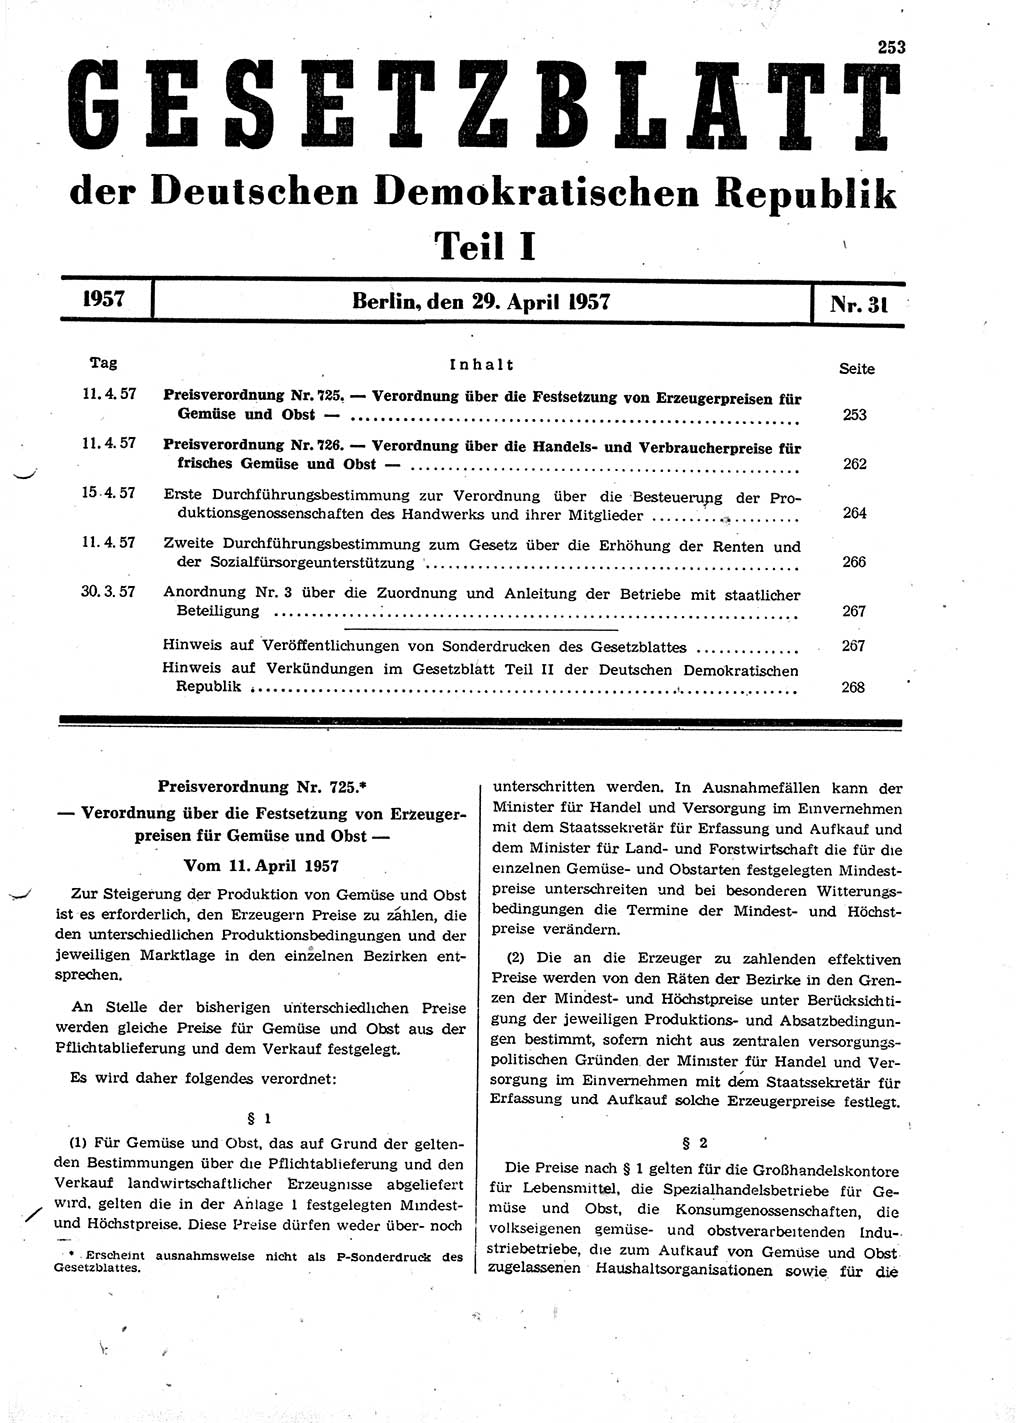 Gesetzblatt (GBl.) der Deutschen Demokratischen Republik (DDR) Teil Ⅰ 1957, Seite 253 (GBl. DDR Ⅰ 1957, S. 253)